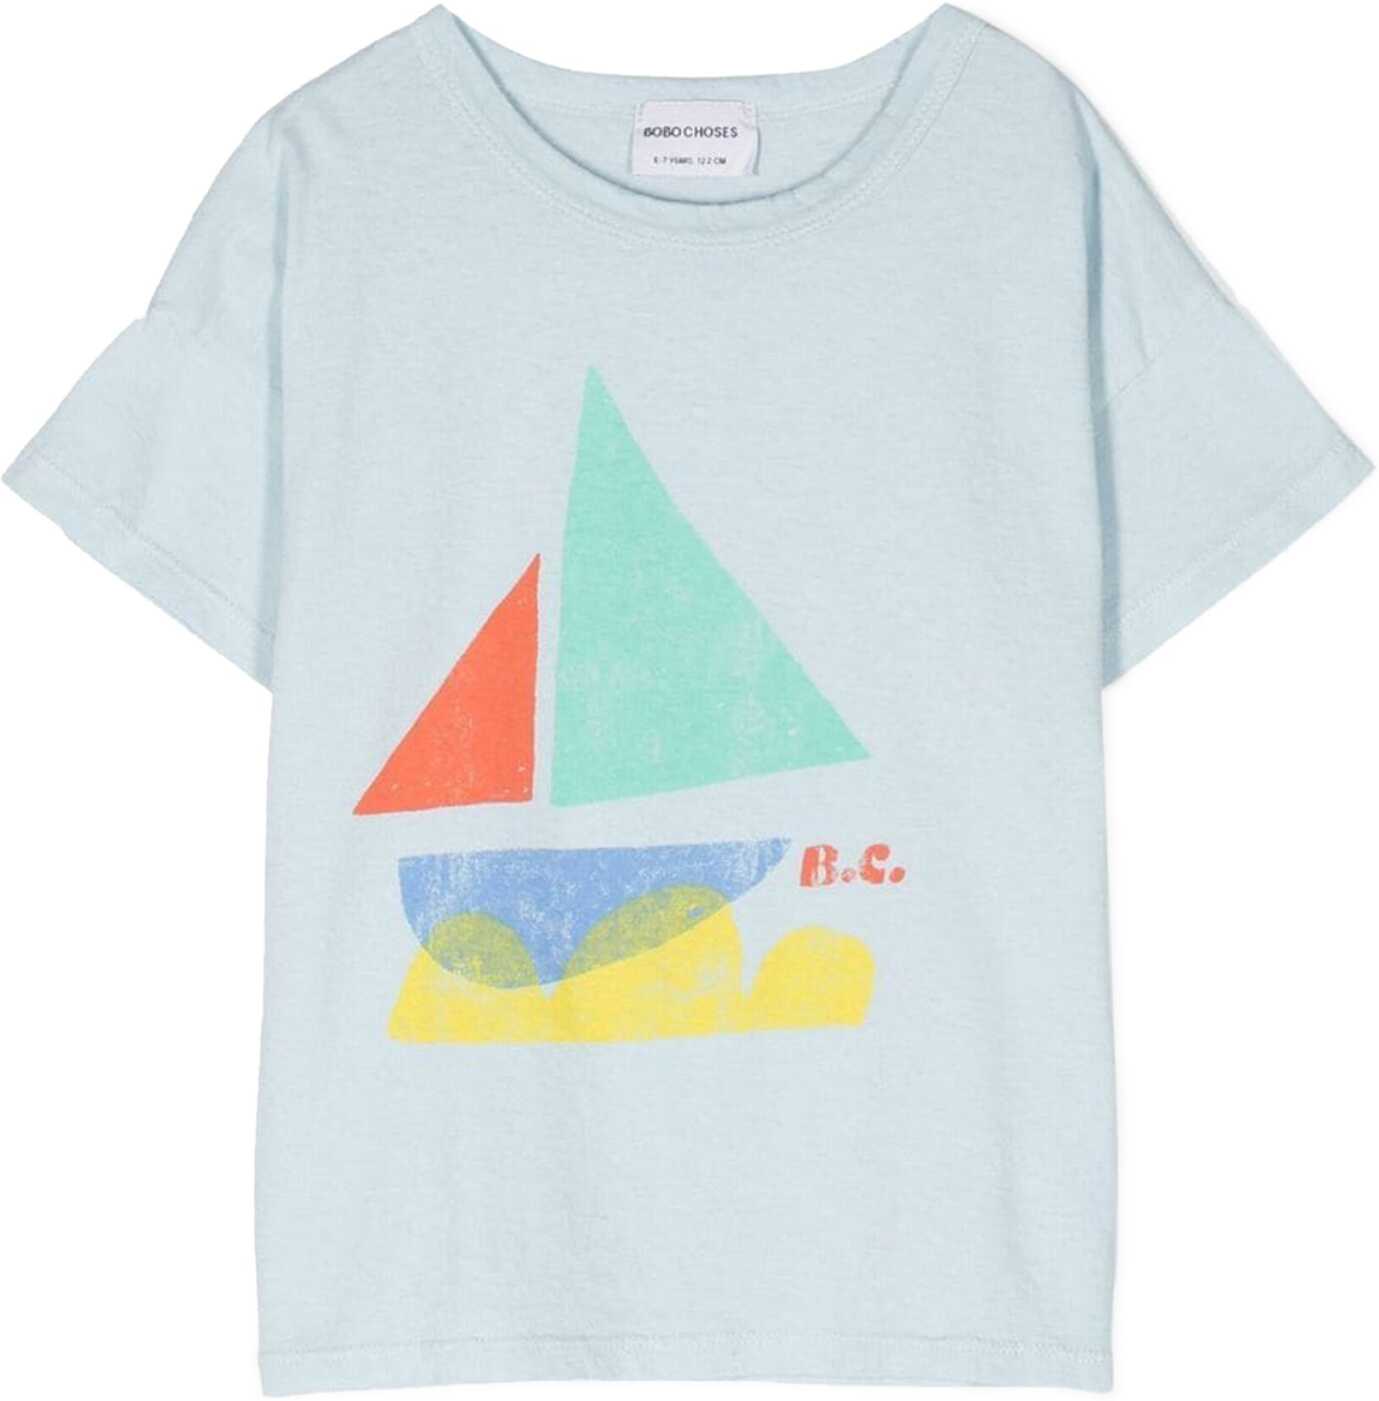 Bobo Choses Sail Boat T-Shirt BABY BLUE